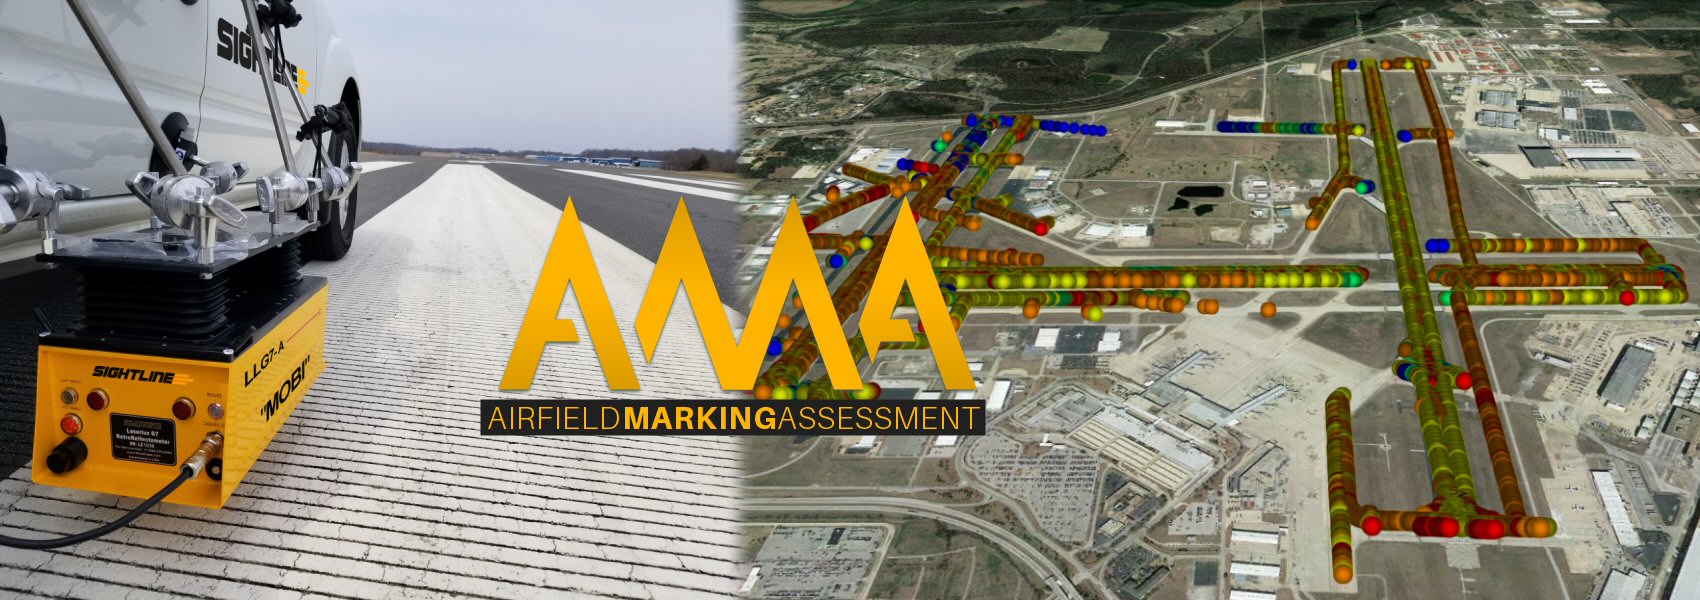 Airfield Marking Assessment